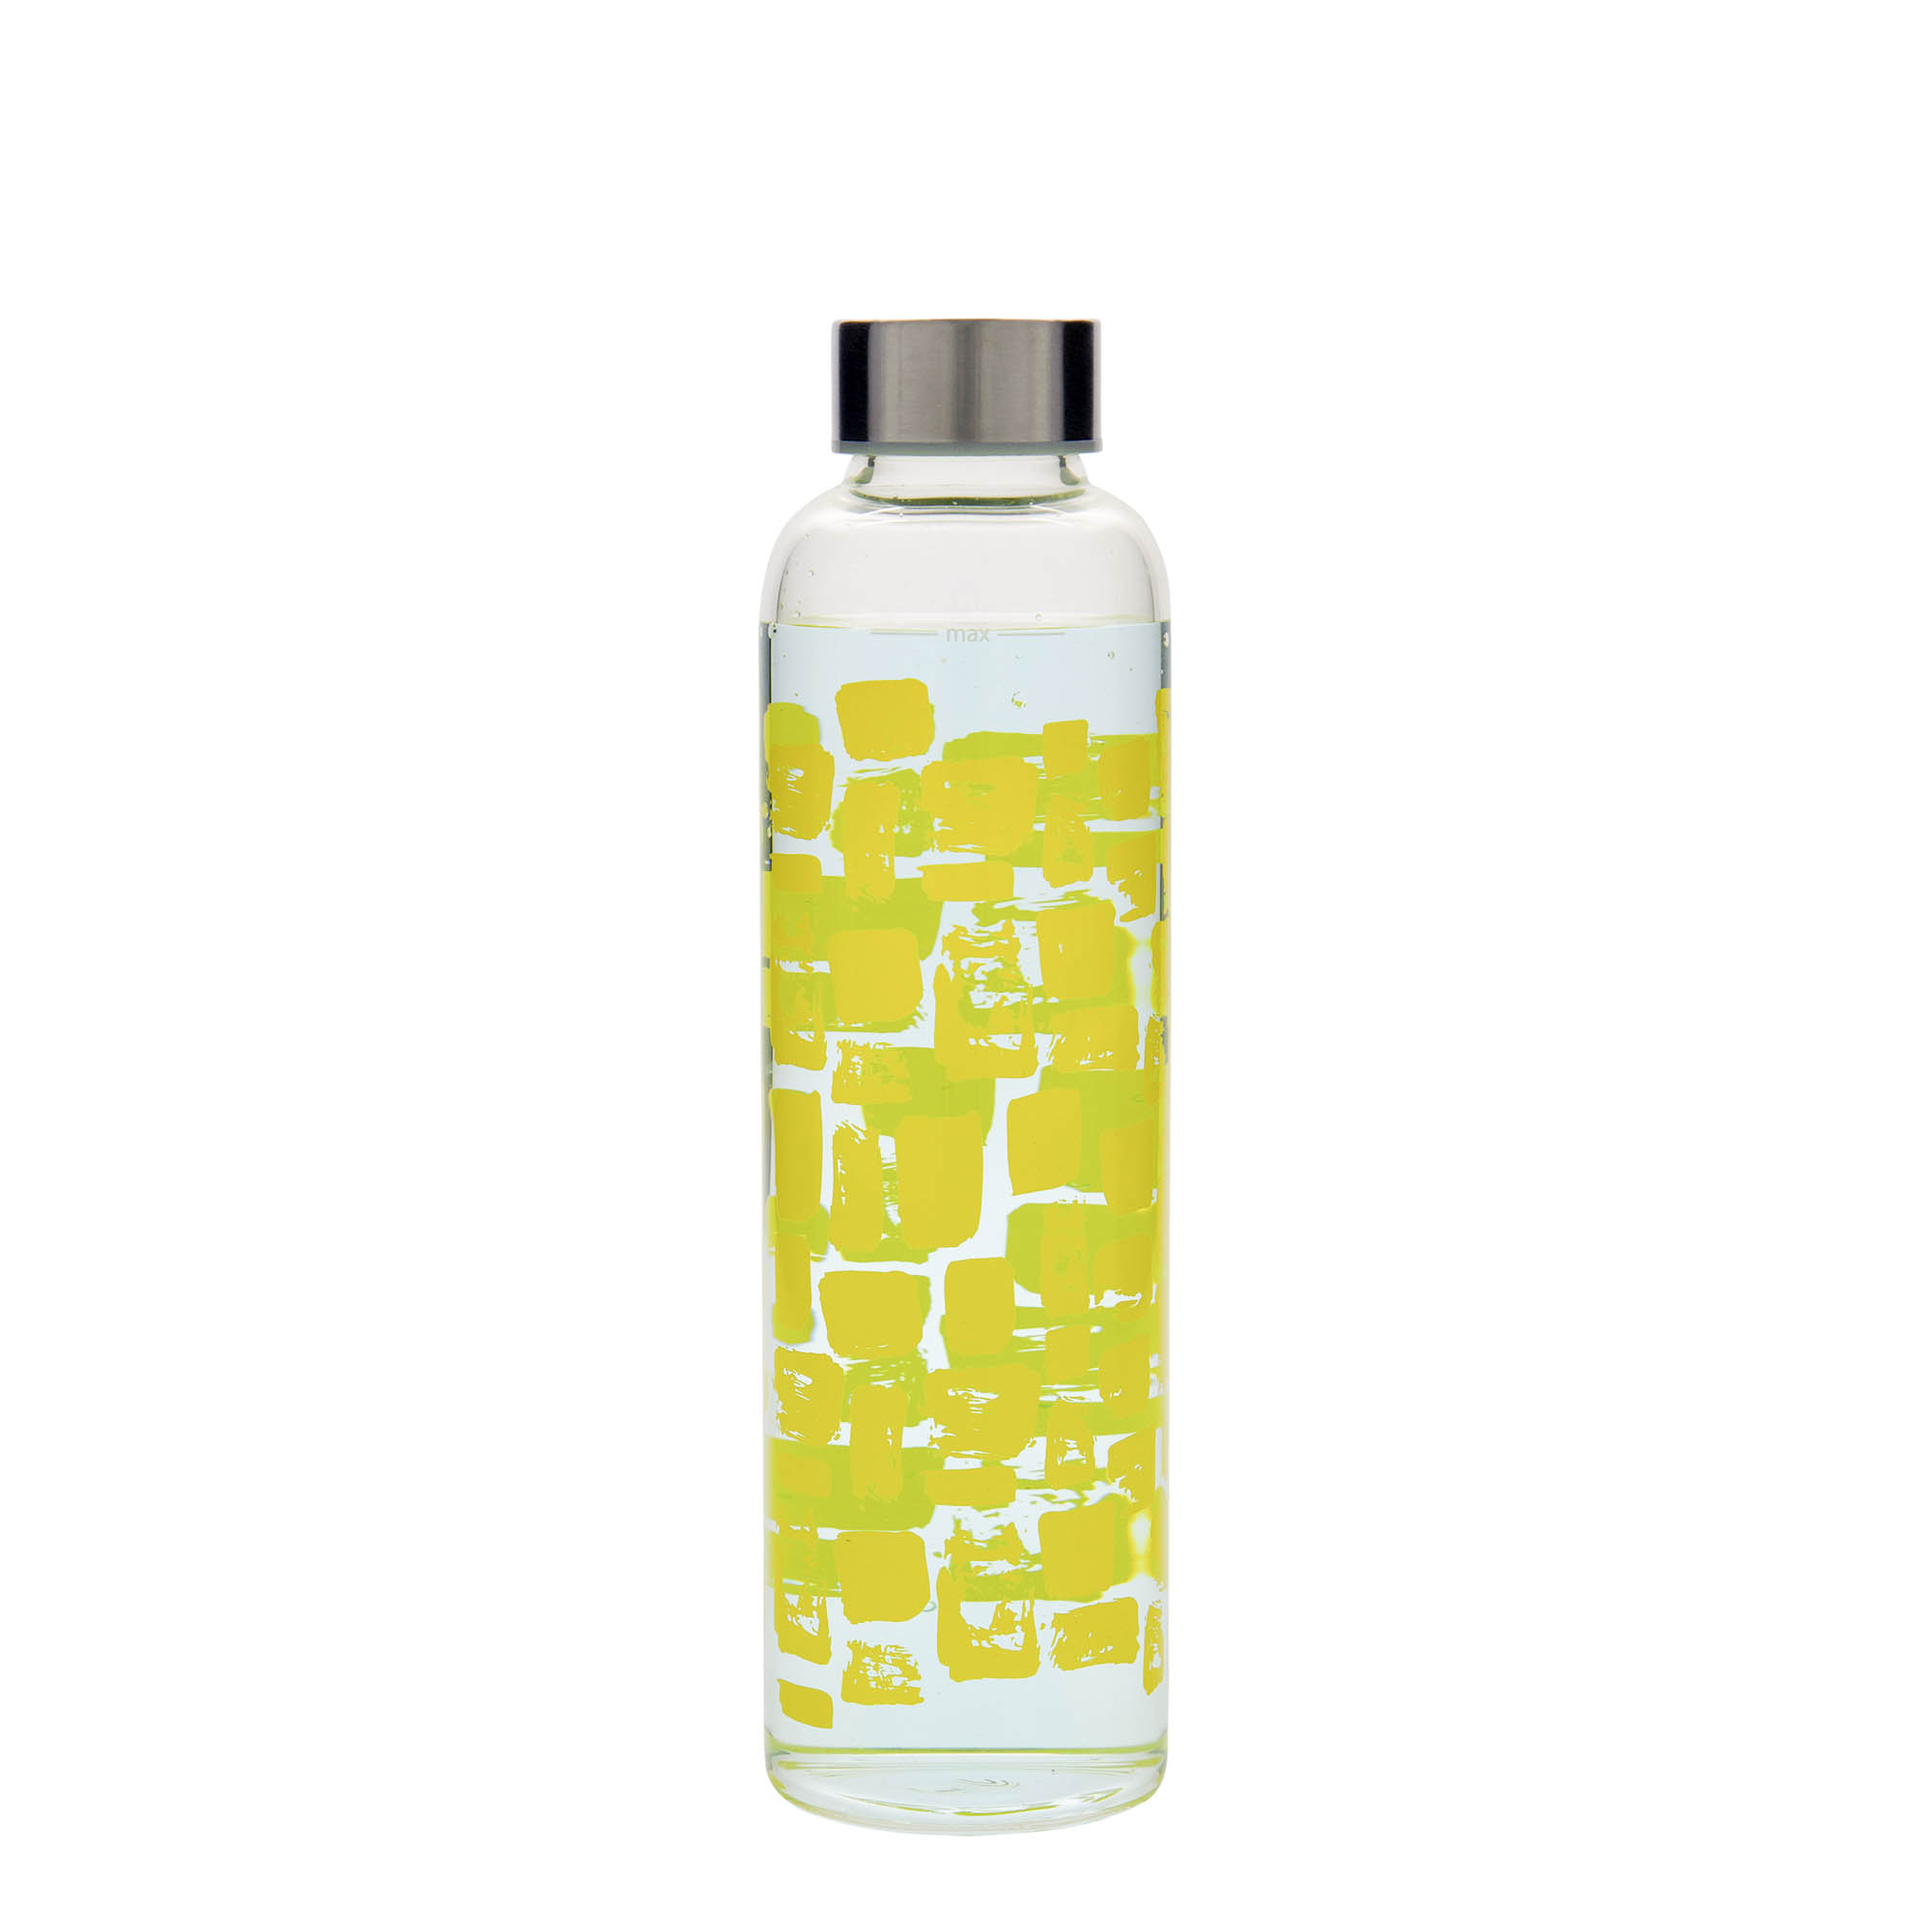 500 ml-es ivópalack, 'Perseus', motívum: Sárga négyszögek, szájnyílás: csavaros kupak